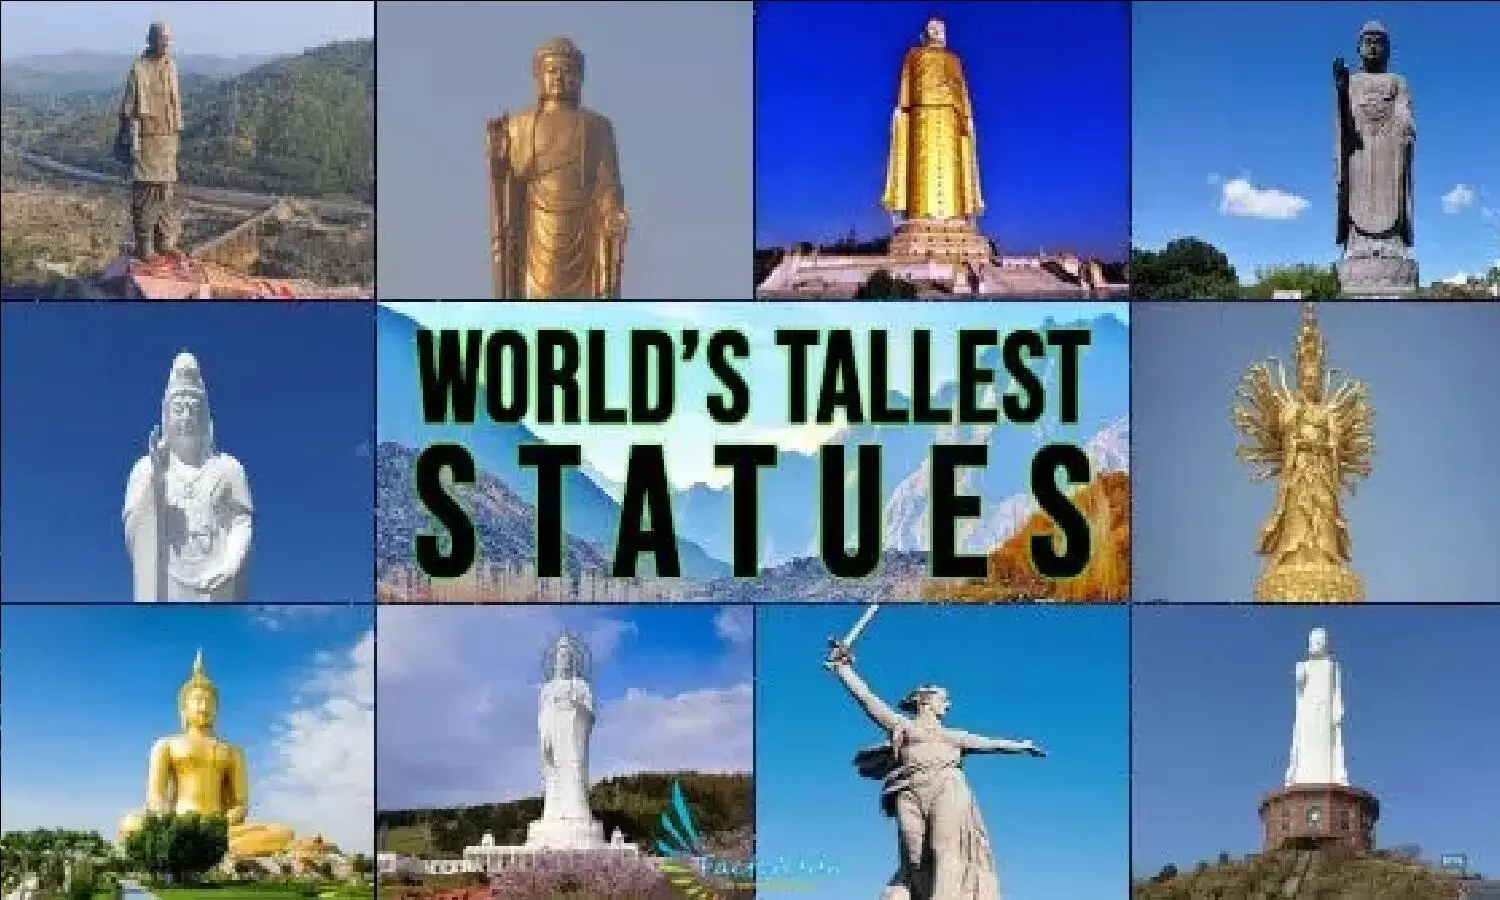 Tallest Statues In The World: दुनिया की 10 सबसे ऊंची प्रतिमाएं, भारत की स्टैच्यू ऑफ यूनिटी सबसे ऊंची